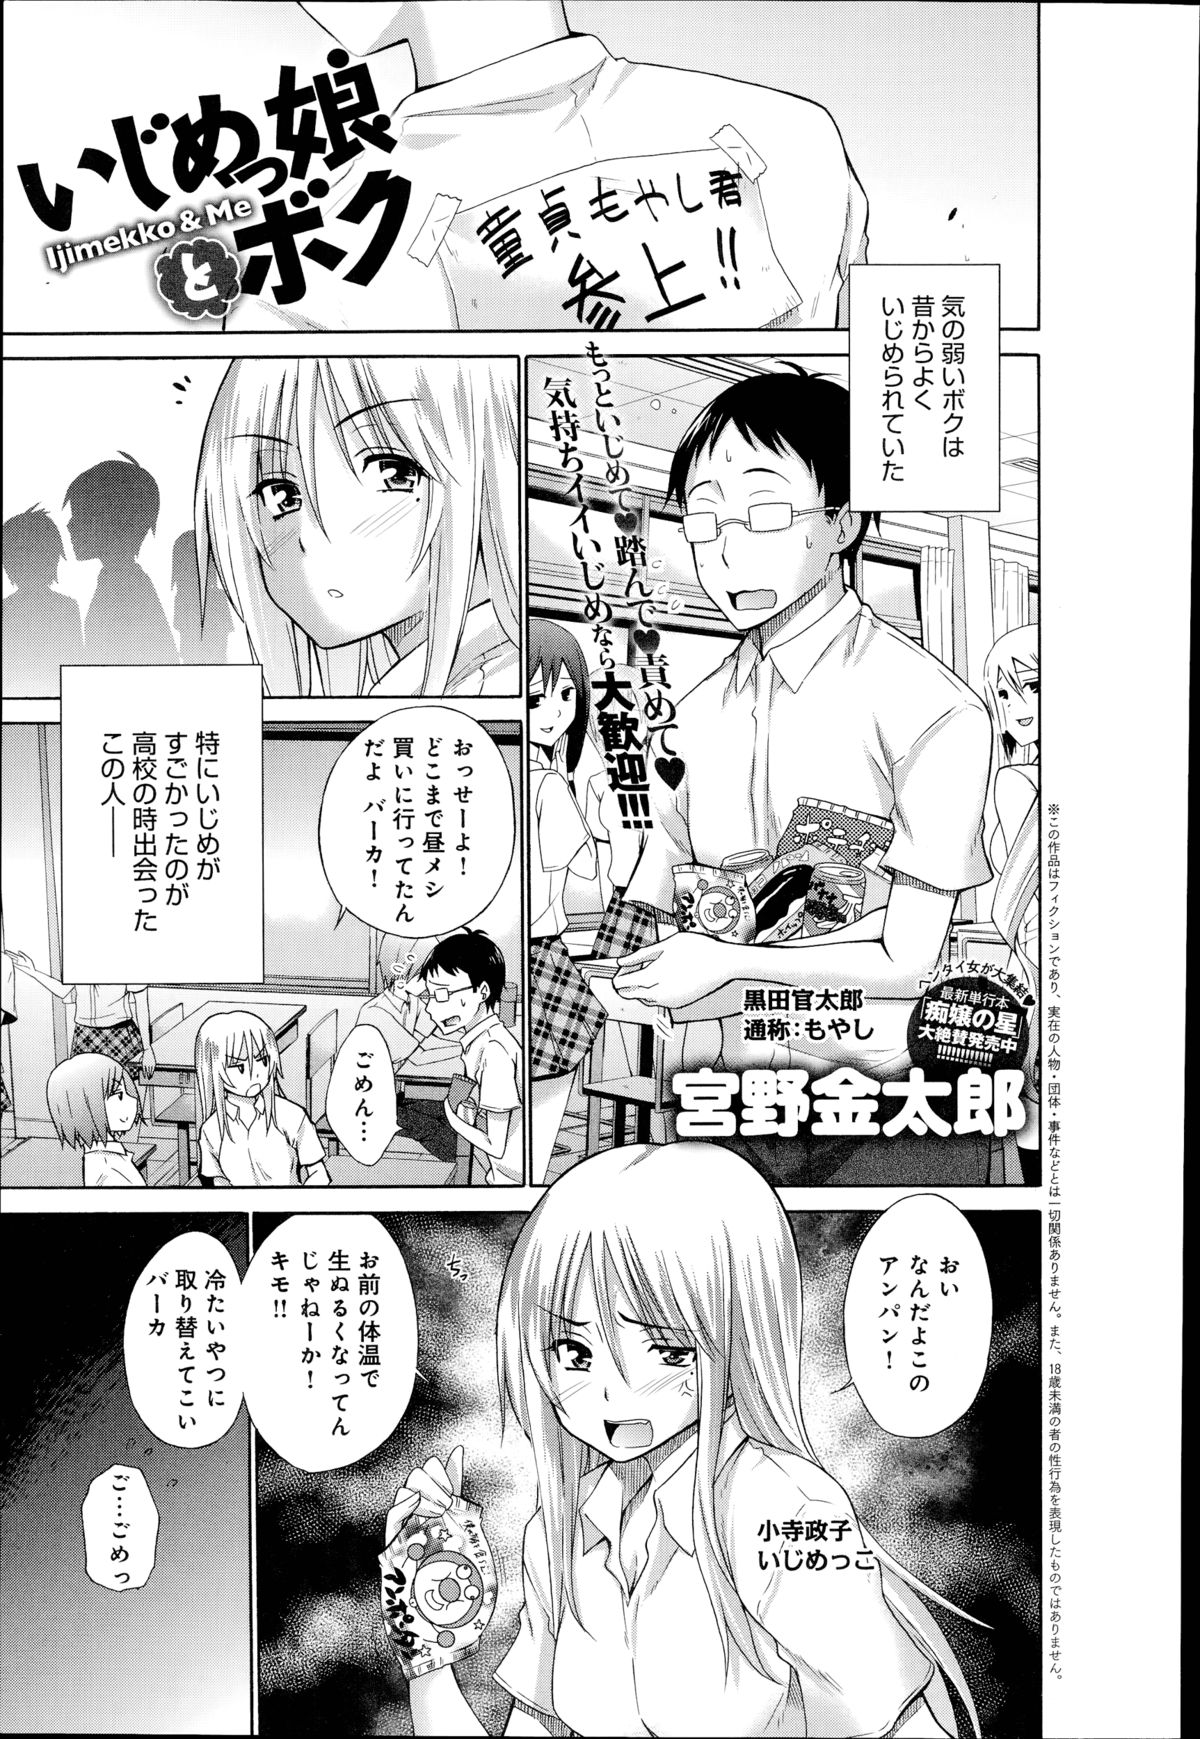 [Miyano Kintarou] Ijimekko to Boku Ch.1-3 page 1 full